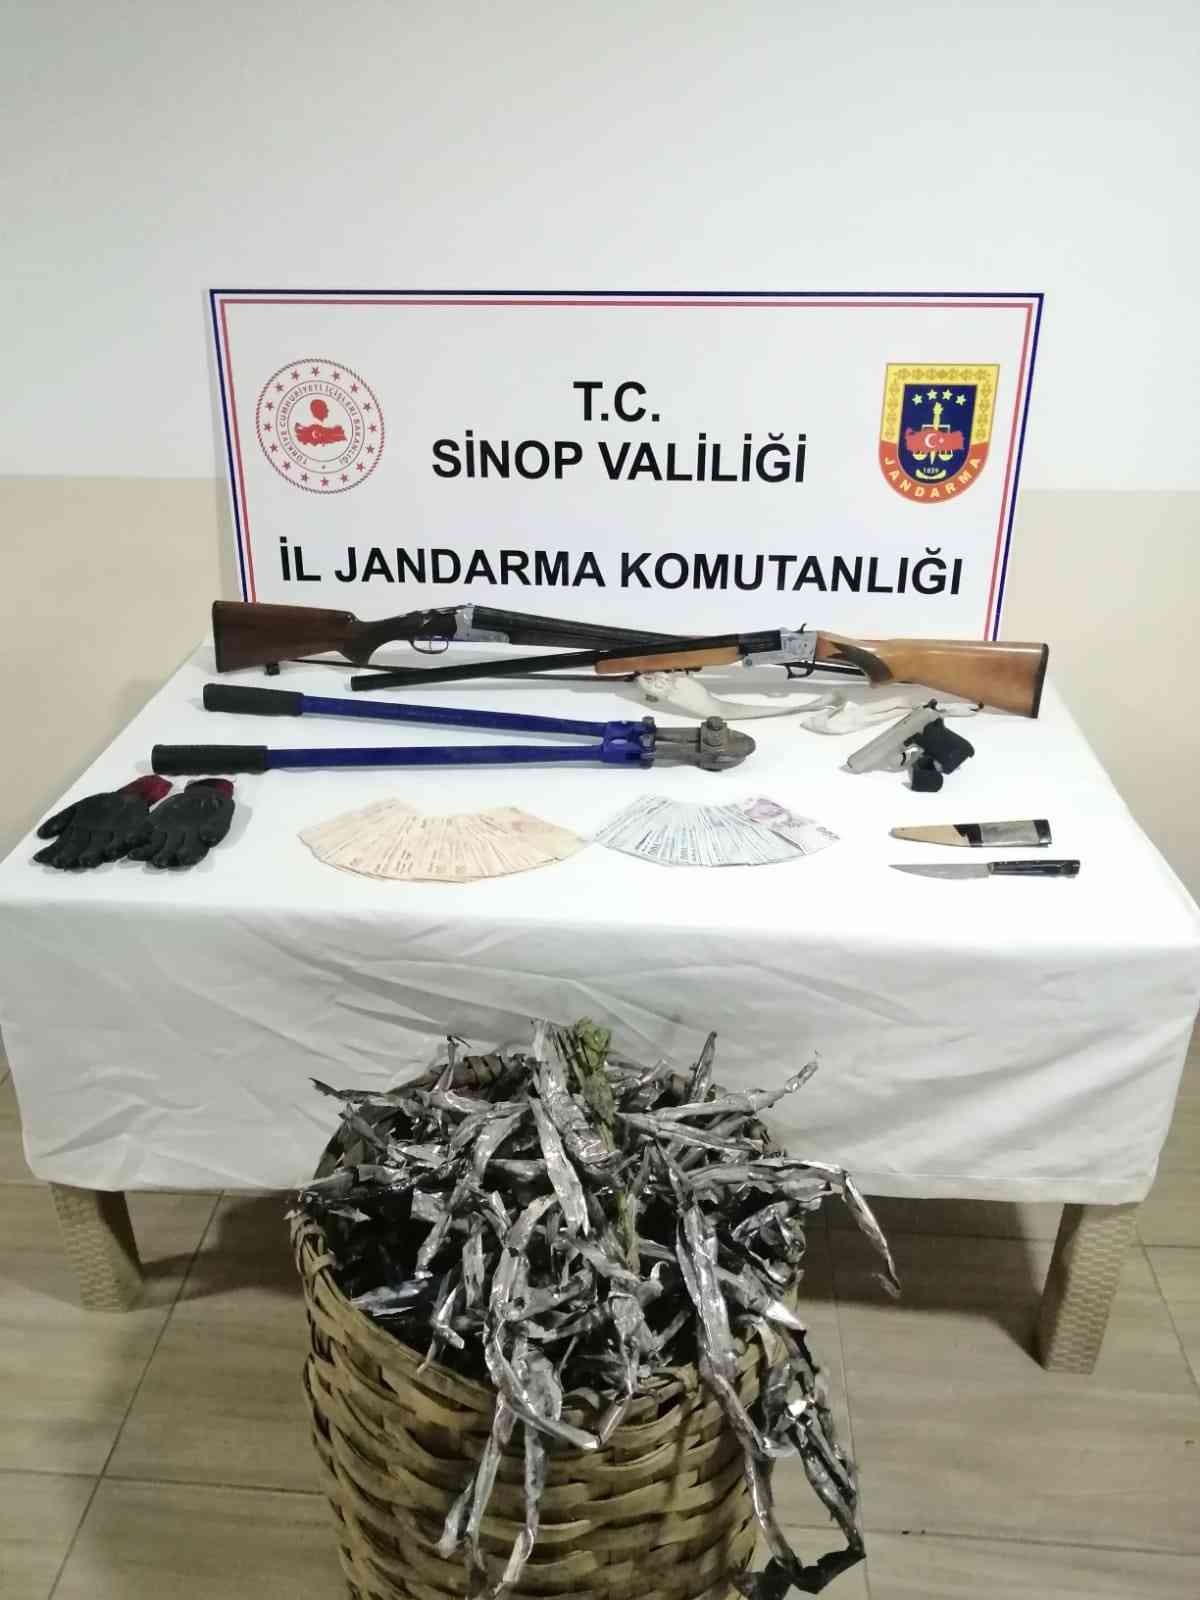 Sinop’ta kablo hırsızları yakalandı #sinop